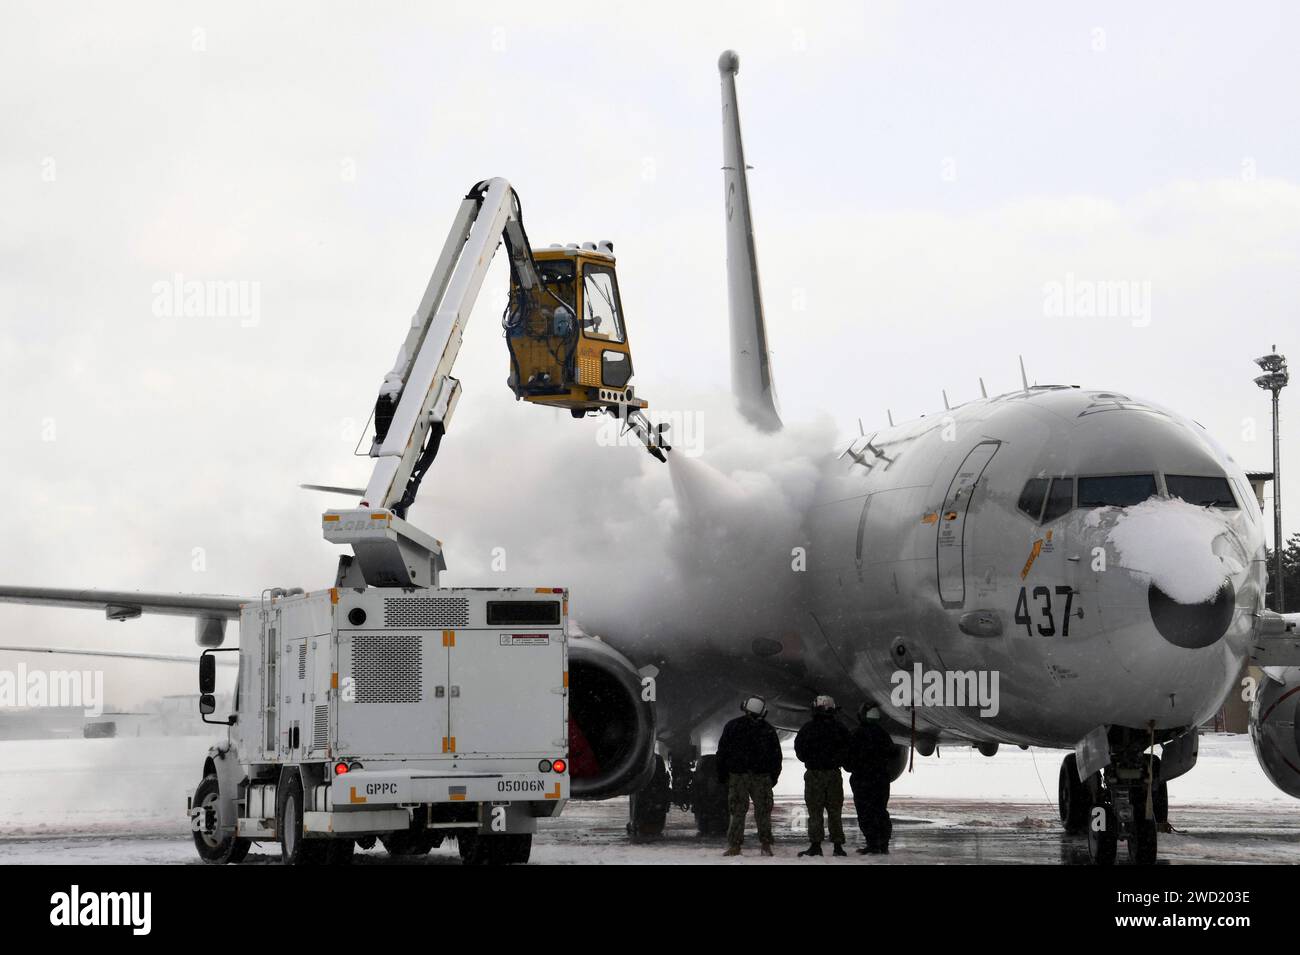 Aviation Machinist's Mate betreibt einen Enteisungswagen, um Schnee und Eis von einem P-8A Poseidon zu entfernen. Stockfoto